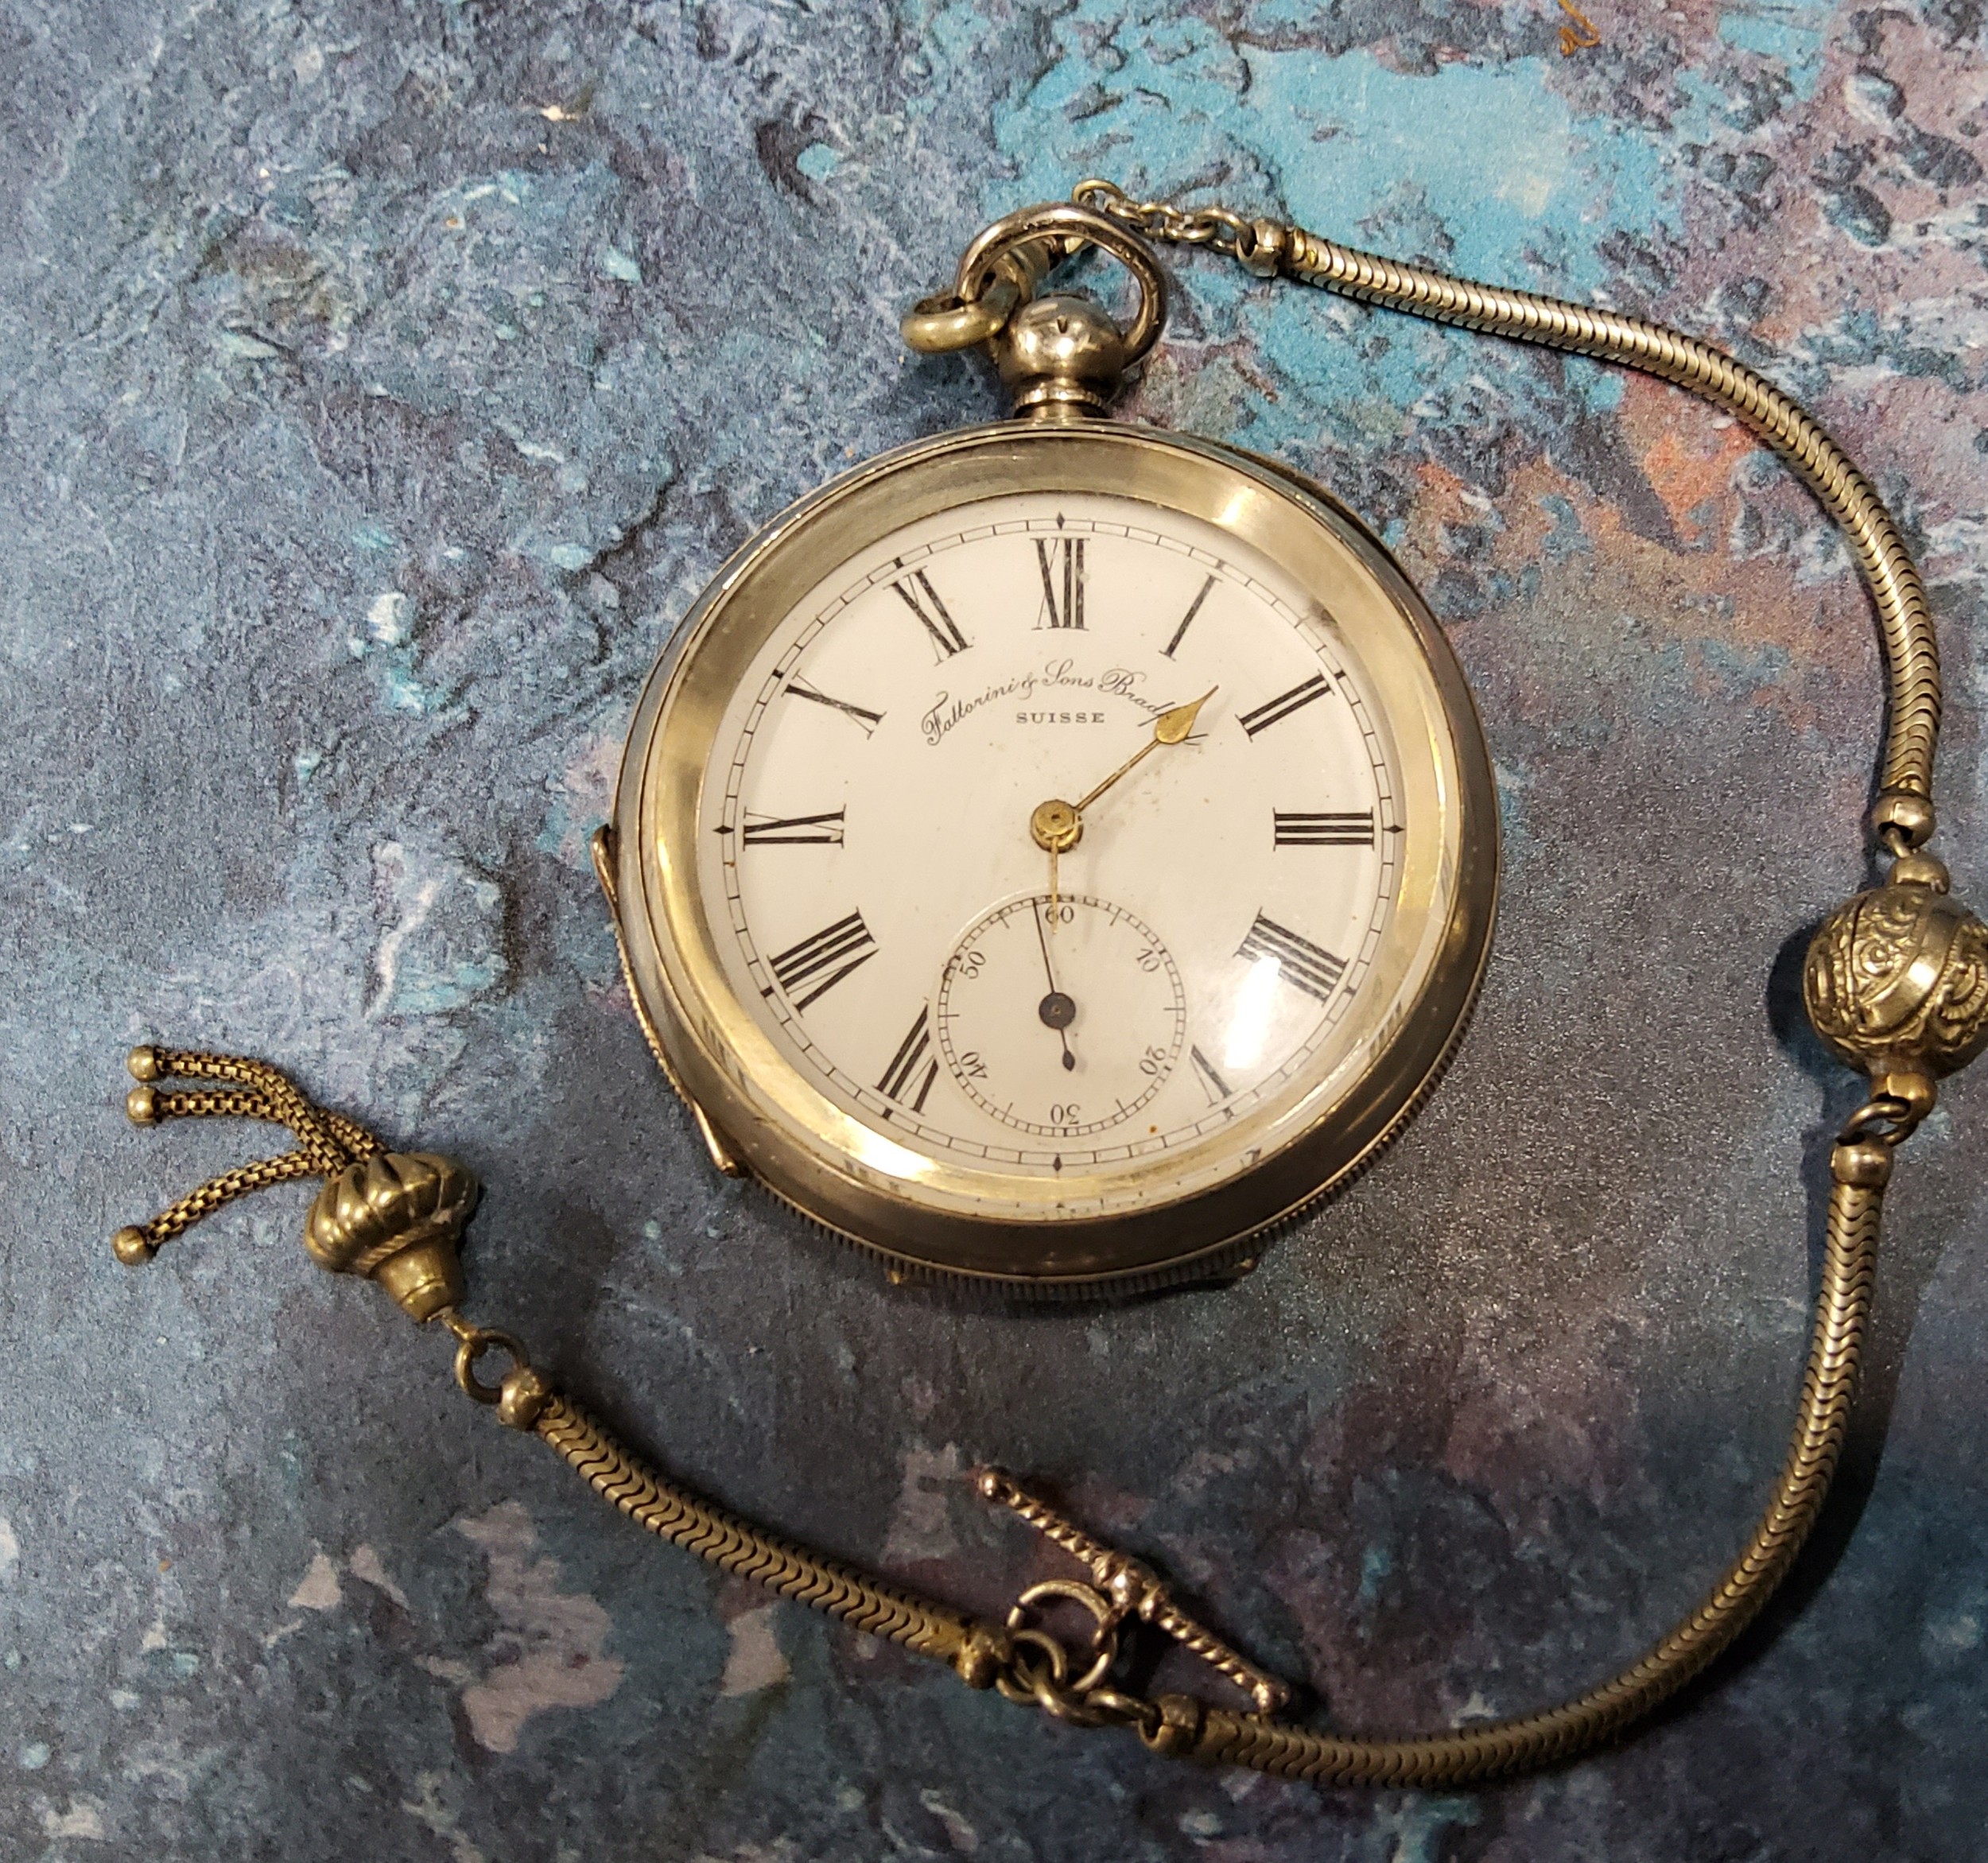 A silver open-faced pocket watch, Roman numerals, inscribed Fattorini & Sons, Bradford; white